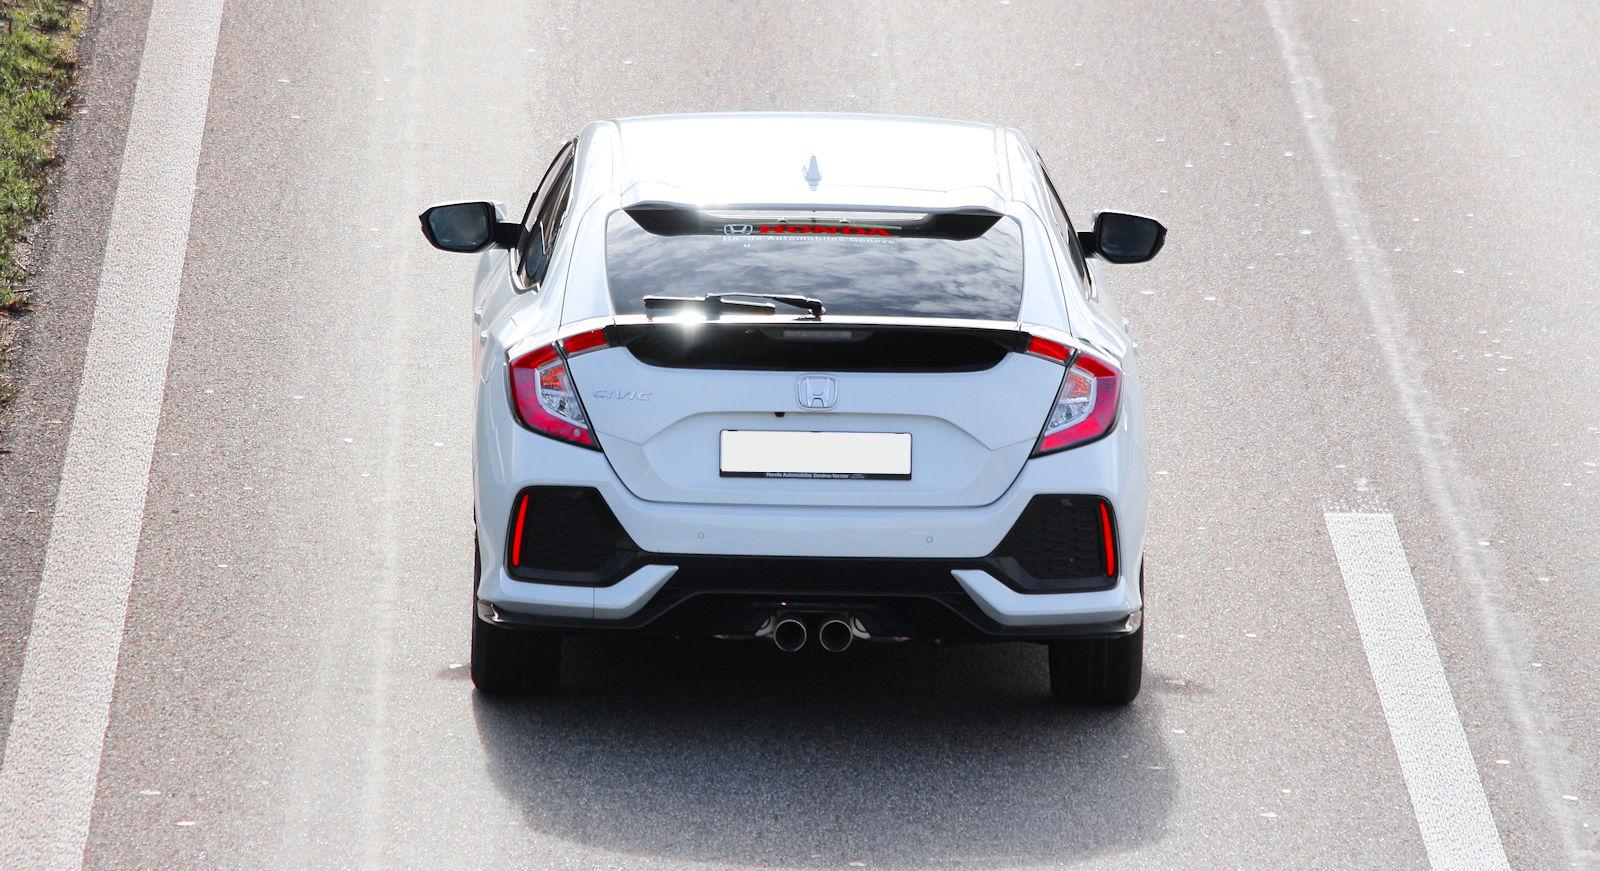 Teste: Honda Civic Type R encontra Civic Si para a passagem do bastão